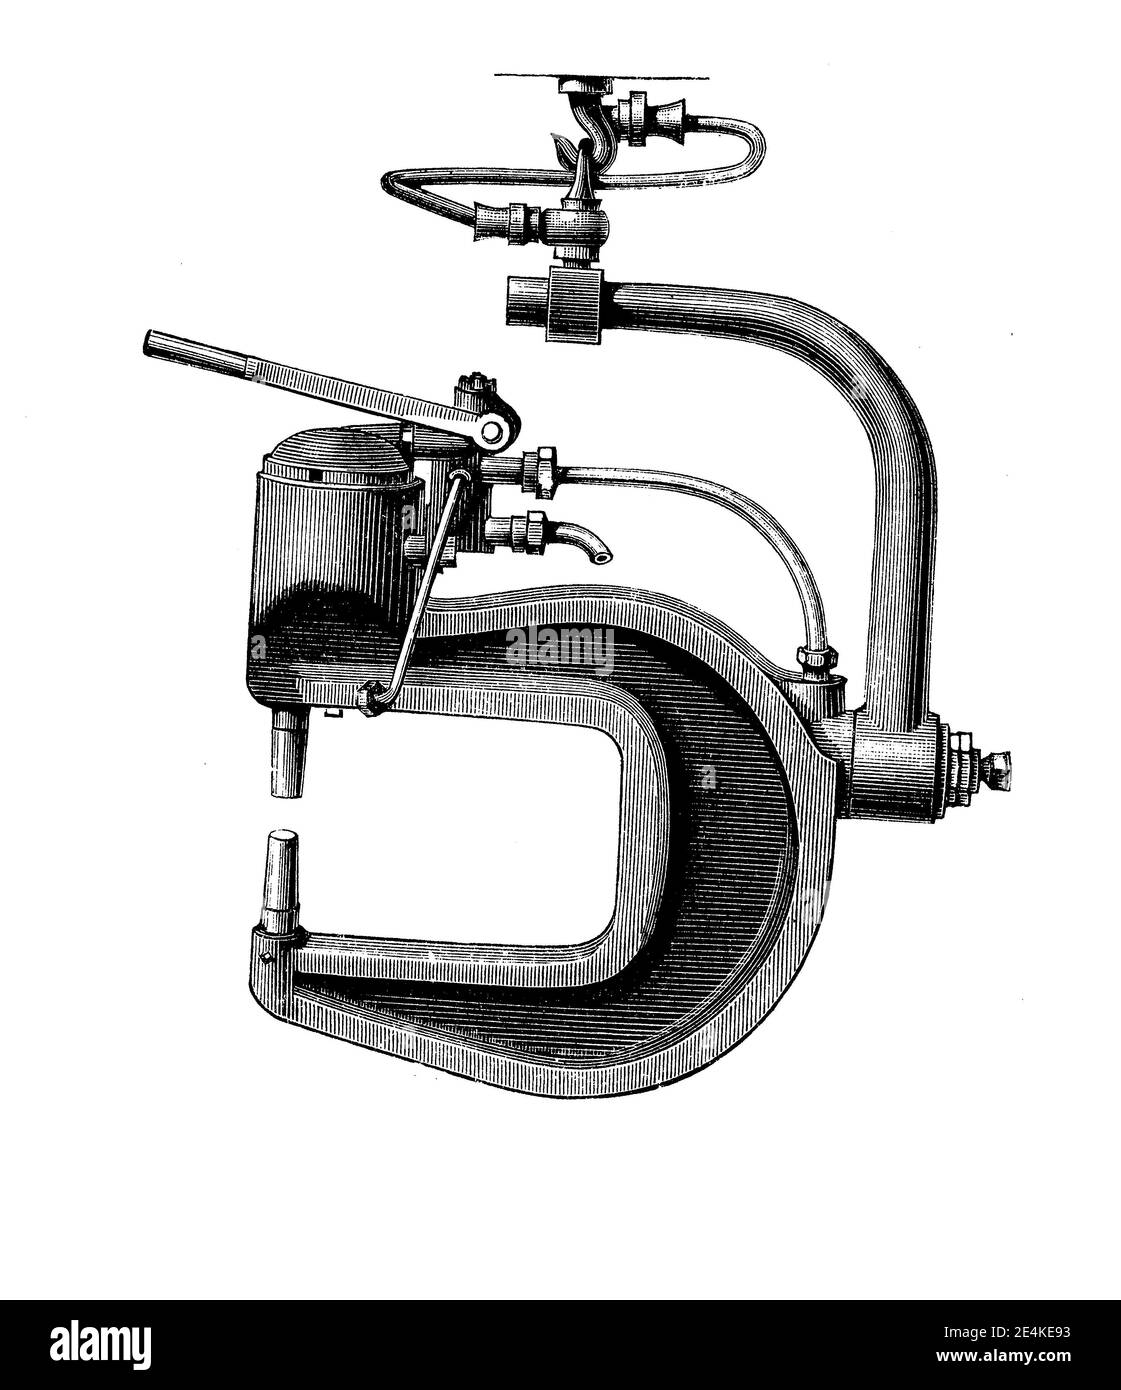 El remachador hidráulico portátil inventado por Ralph Hart Tweddell facilitó enormemente la construcción de calderas, puentes y barcos, grabado del siglo 19 Foto de stock